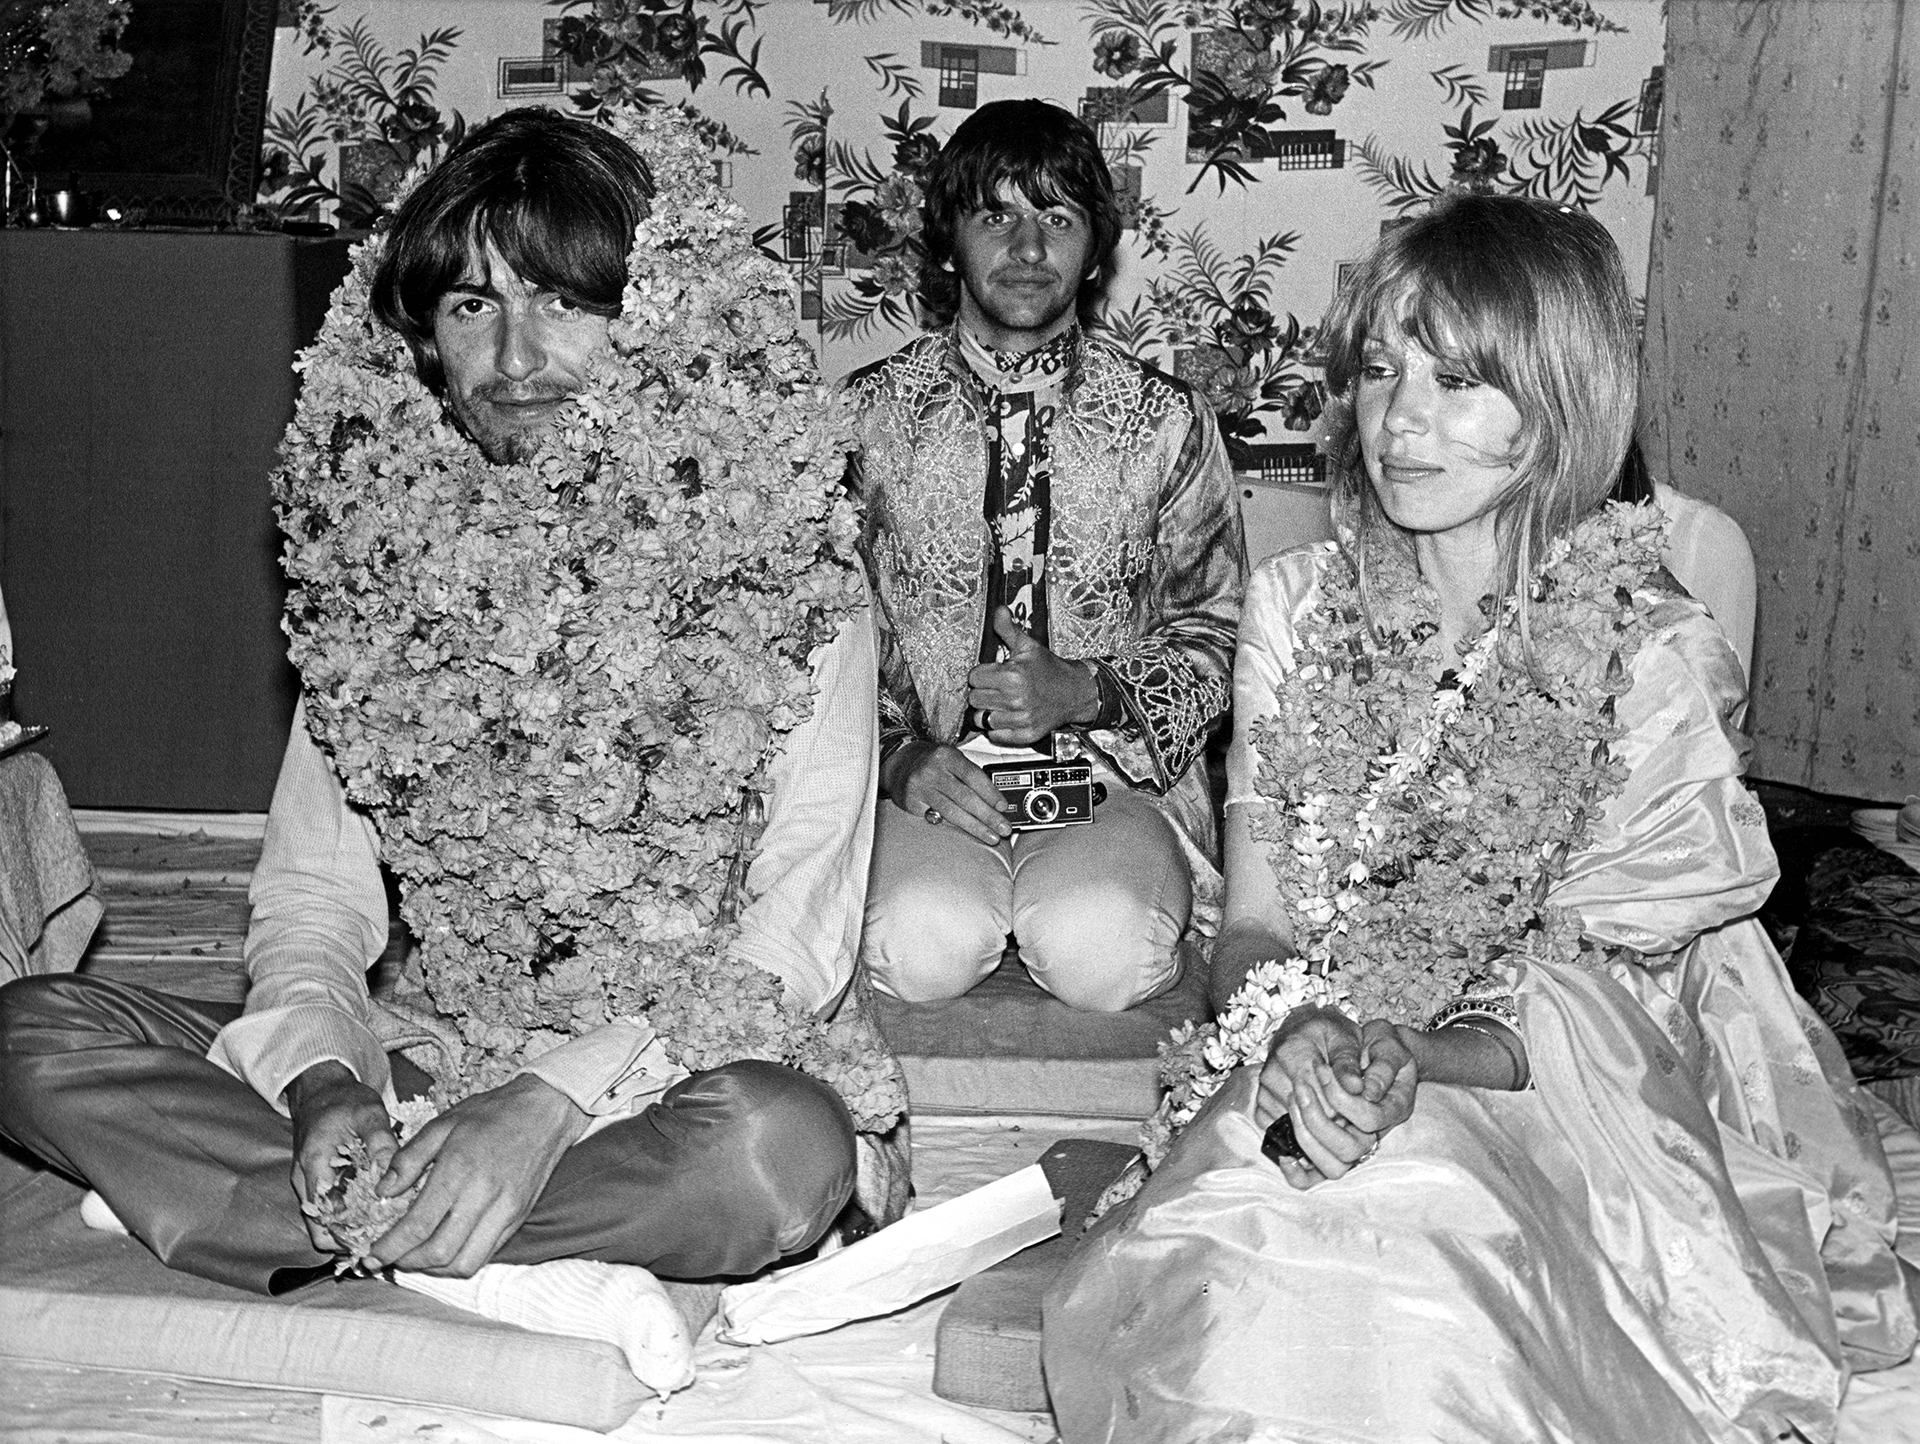 Harrison con su esposa Patty Boyd (la Layla de Eric Clapton), quien se adjudicaba el mérito de haber introducido a George y a los otros tres Beatles en la Meditación Trascendental (MT)(Cummings Archives/Redferns)